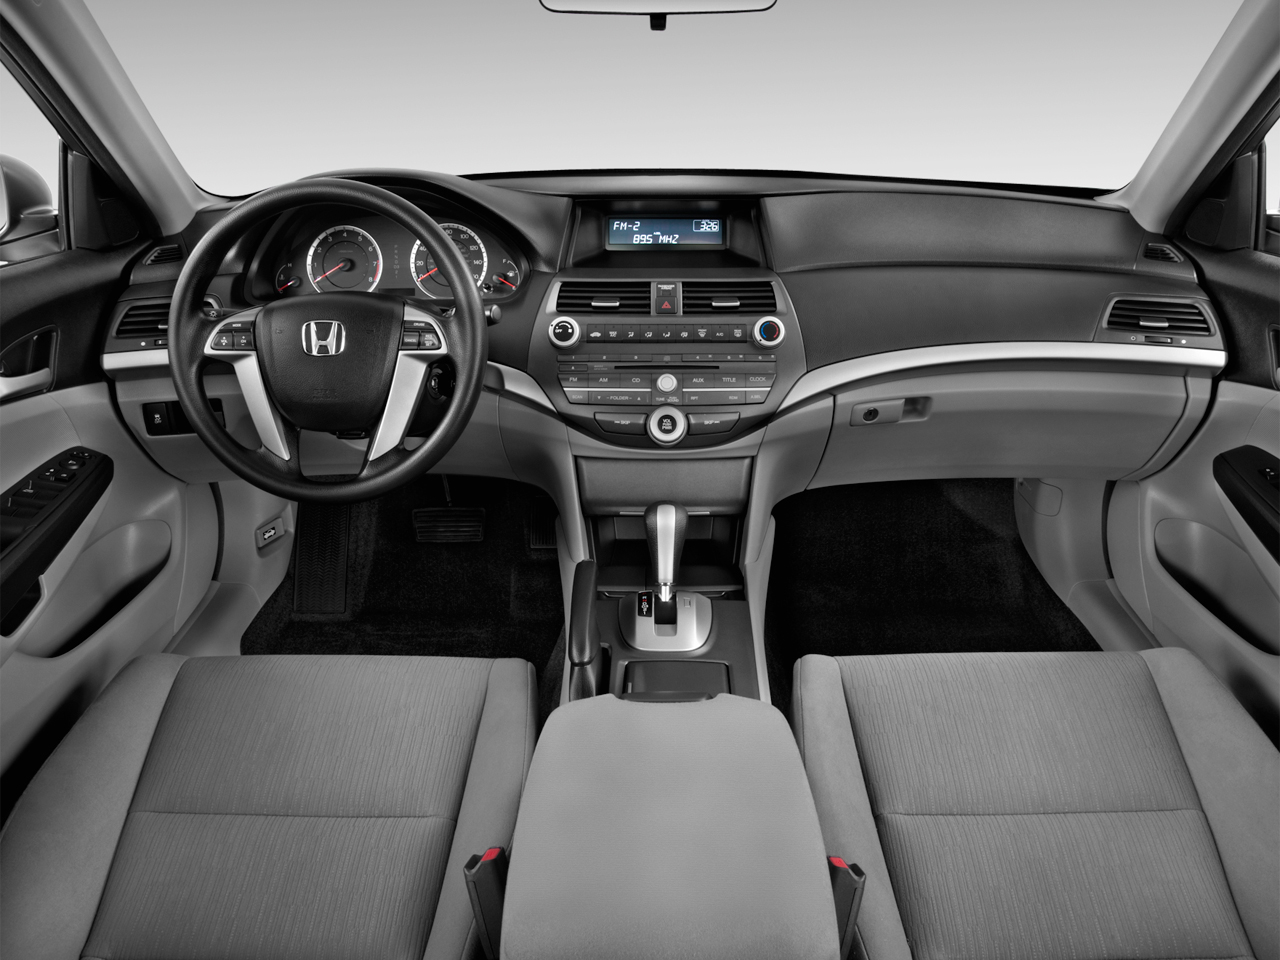 Honda Accord IX 2012 - 2015 Sedan #5